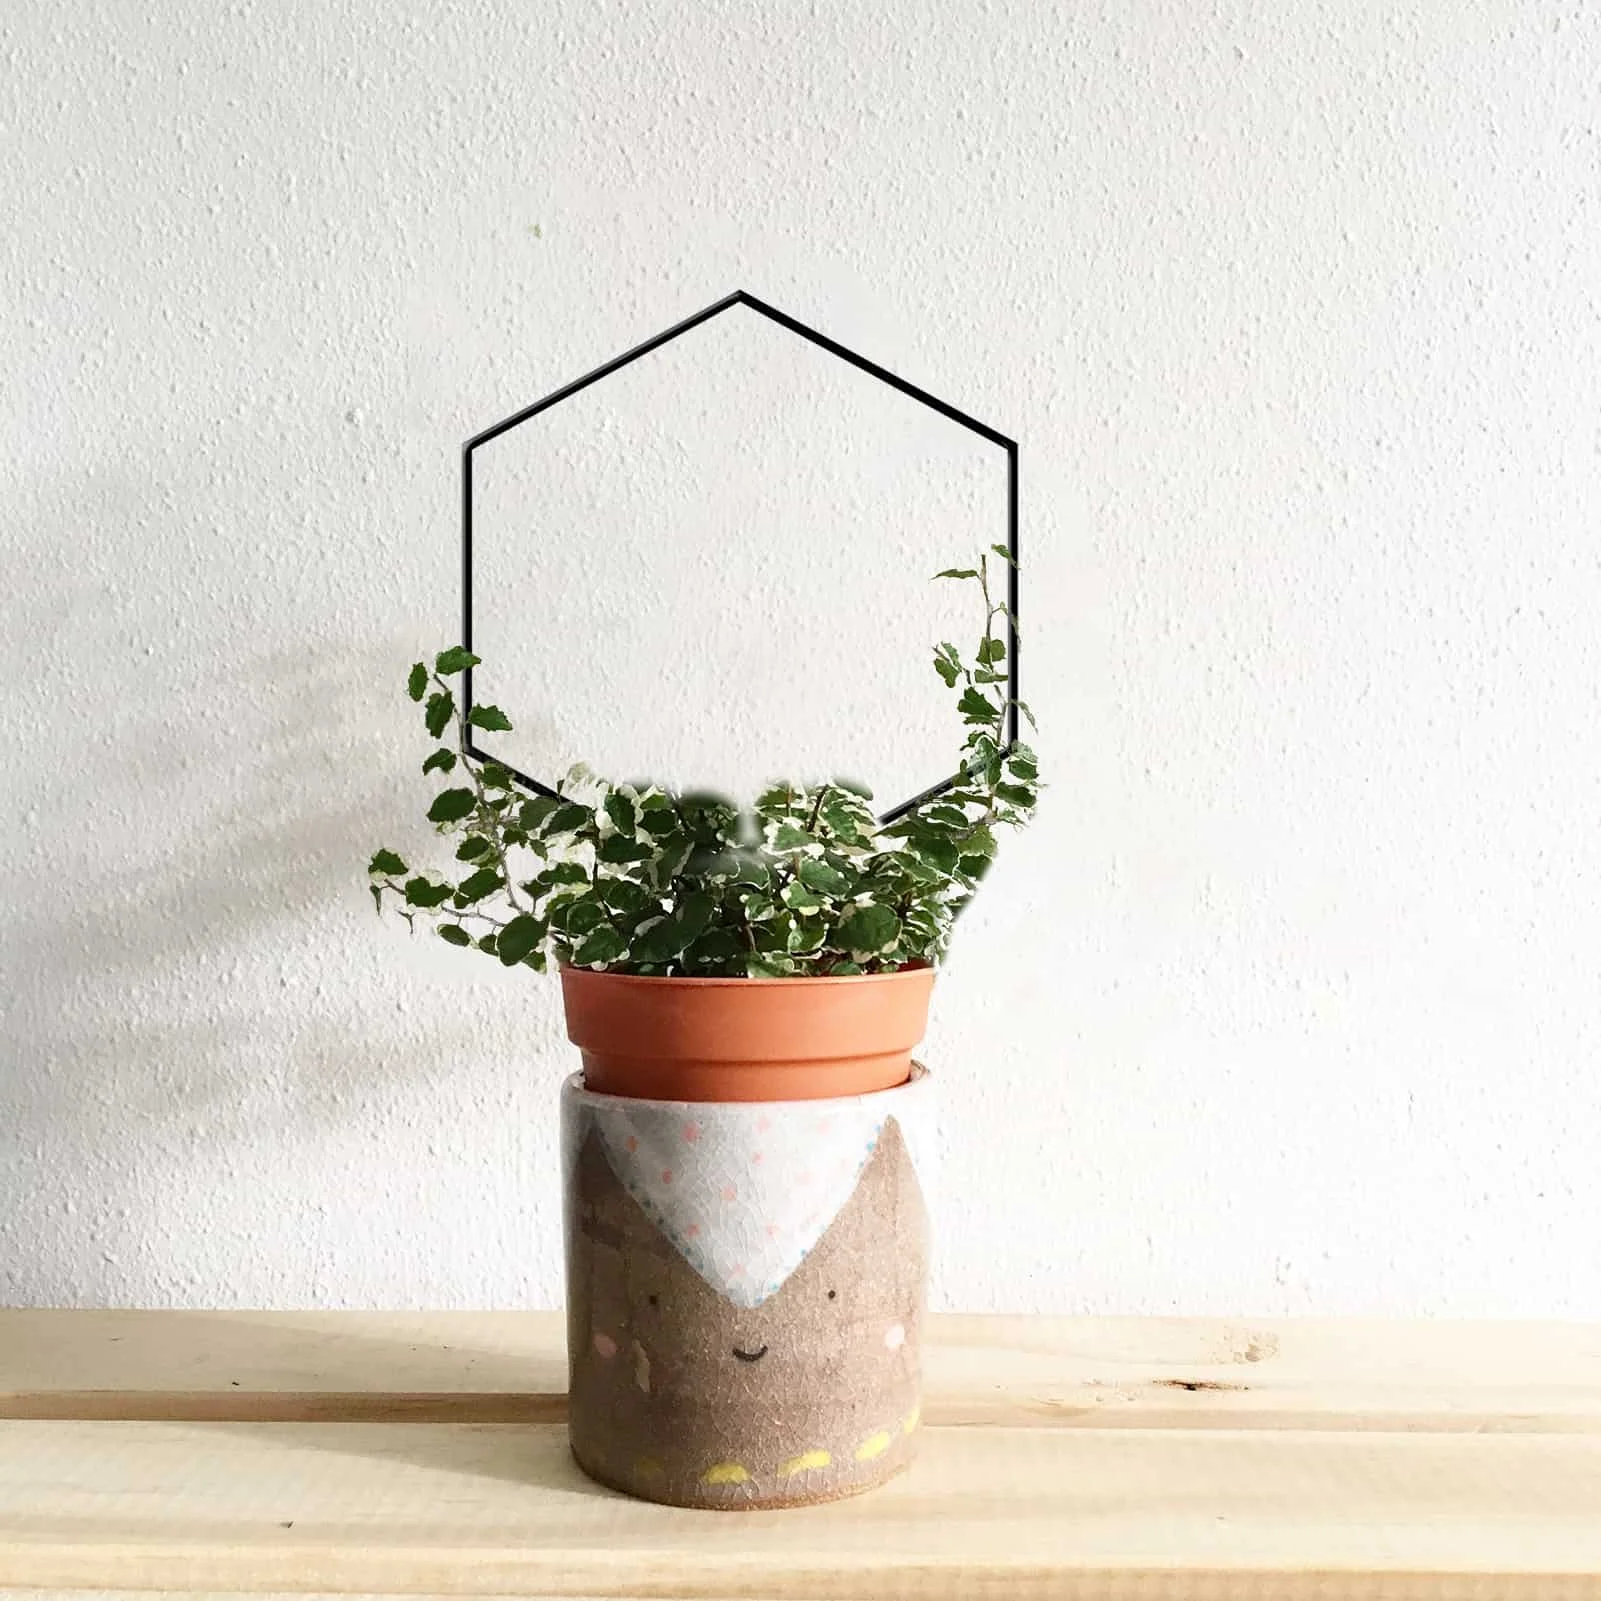 

Металлическая подставка для решетки, декоративный держатель для выращивания растений в горшках, для комнатных садовых цветов